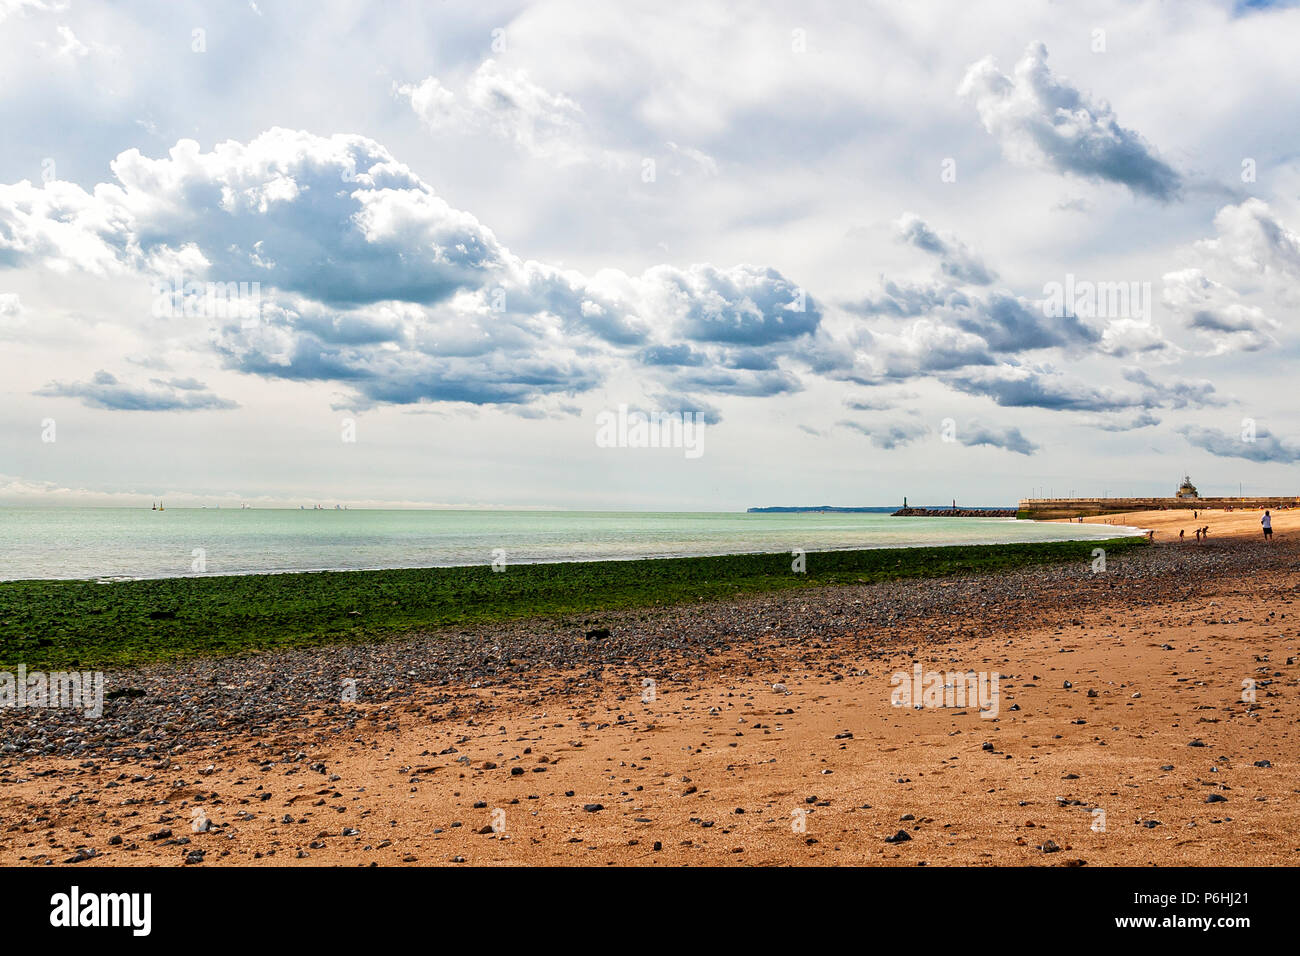 Immagine paesaggistica della scena della spiaggia con spiaggia sabbiosa, alghe verdi e una riflessione verde dal mare con nuvole ondulate, Kent Coast, Inghilterra Foto Stock